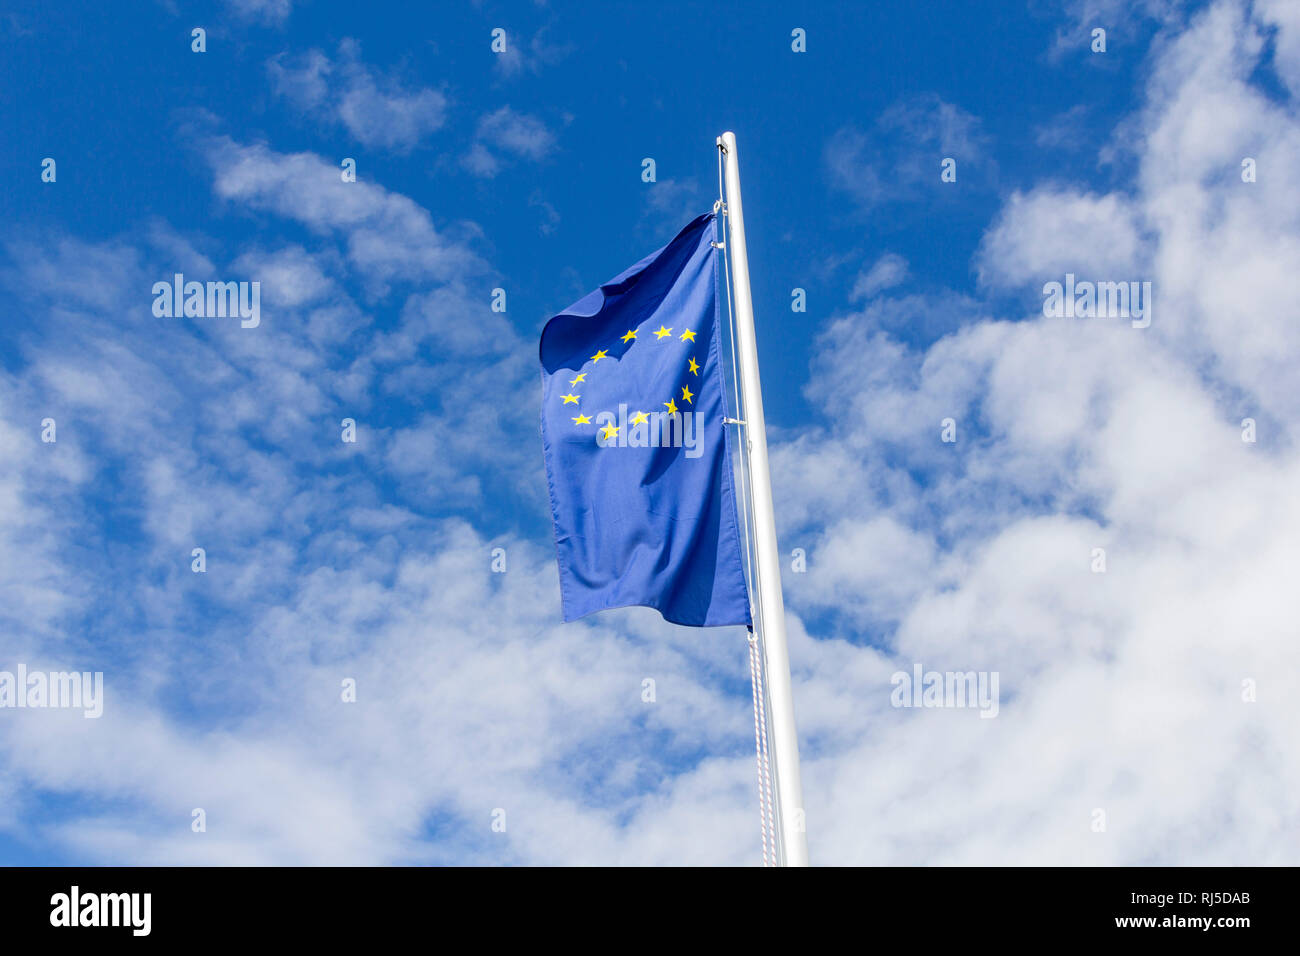 Die Sterne auf der Fahne der Europäischen Union flattern im Wind Foto Stock